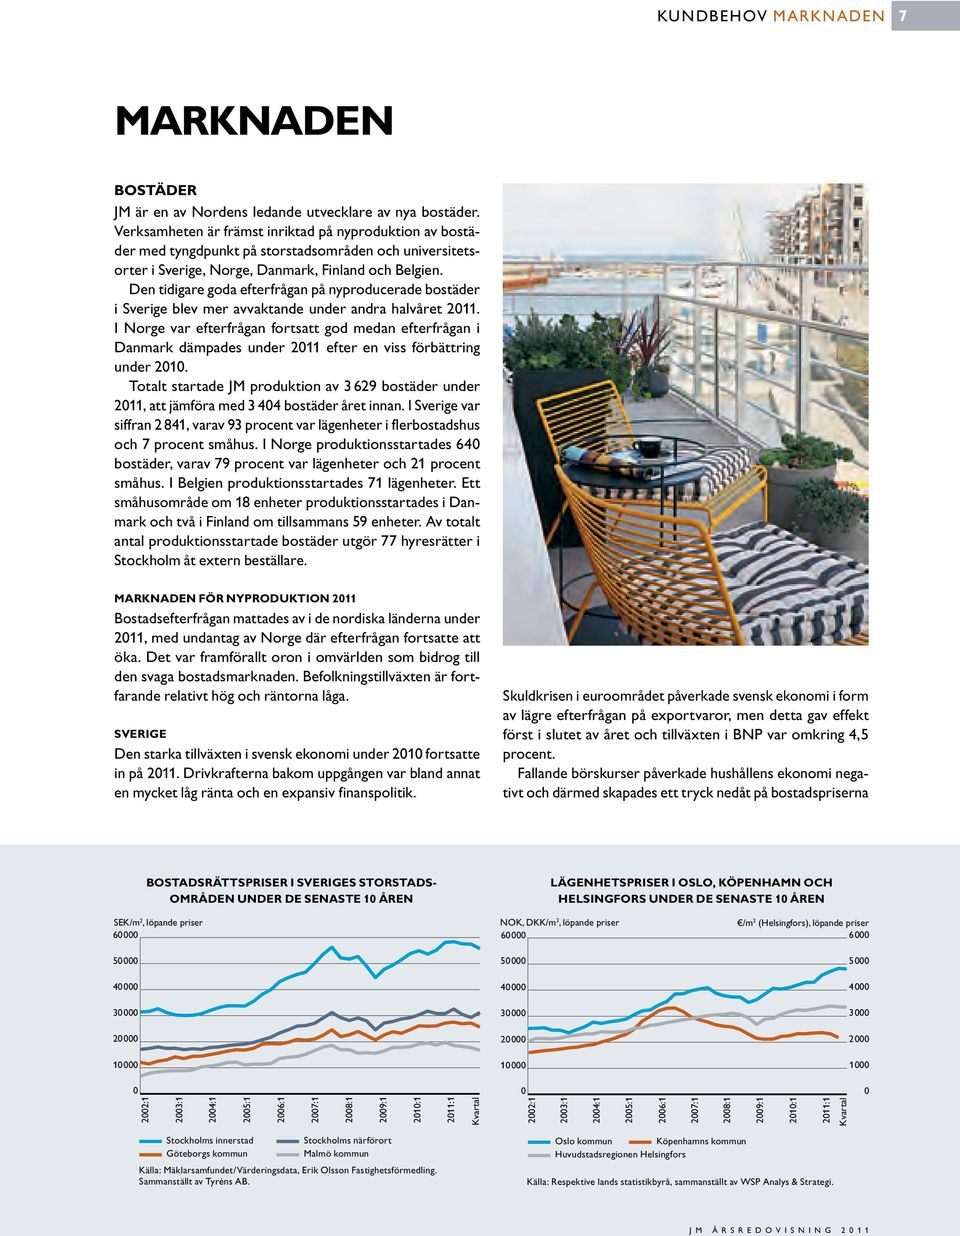 Den tidigare goda efterfrågan på nyproducerade bostäder i Sverige blev mer avvaktande under andra halvåret 2011.